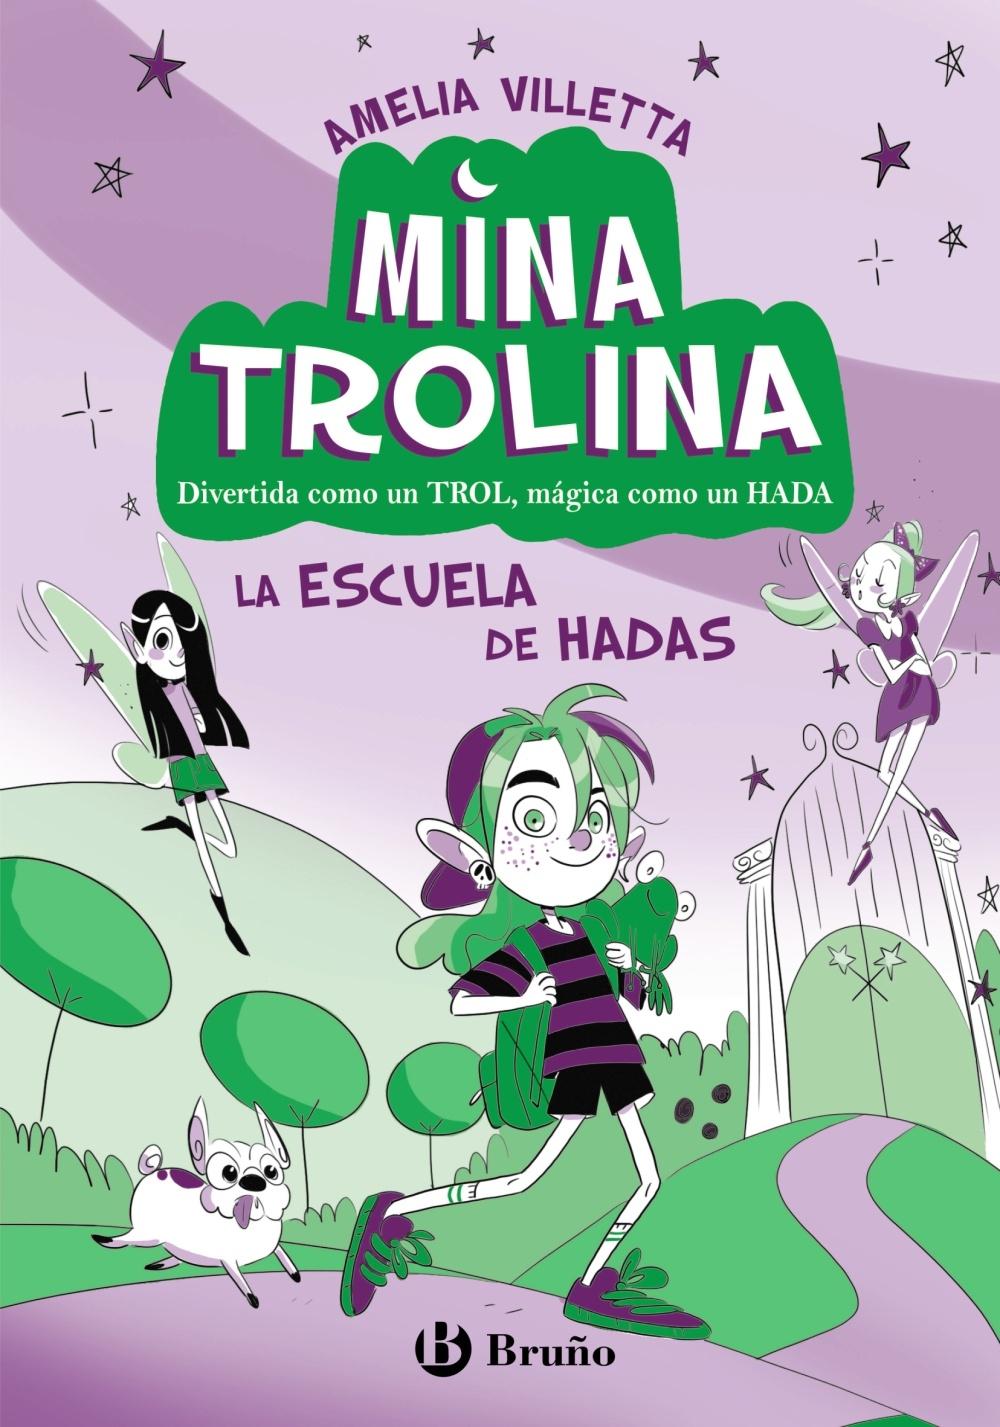 Mina Trolina, 1. la Escuela de Hadas "Divertida como un Trol, Mágica como un Hada"